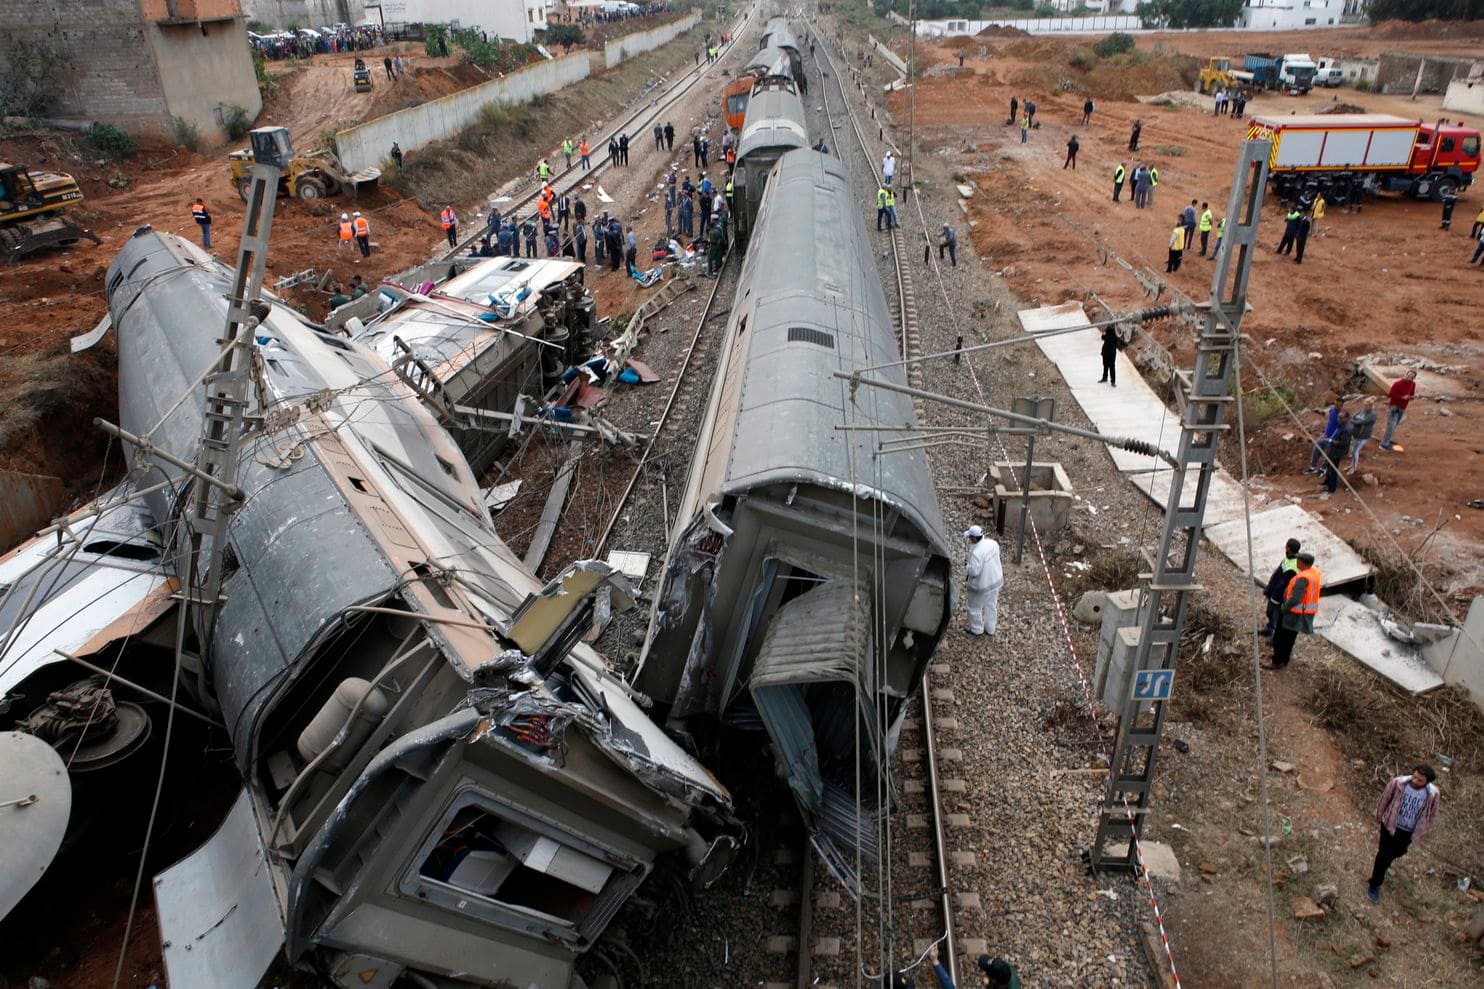 Train derailment kills 7, injures 80 near Rabat